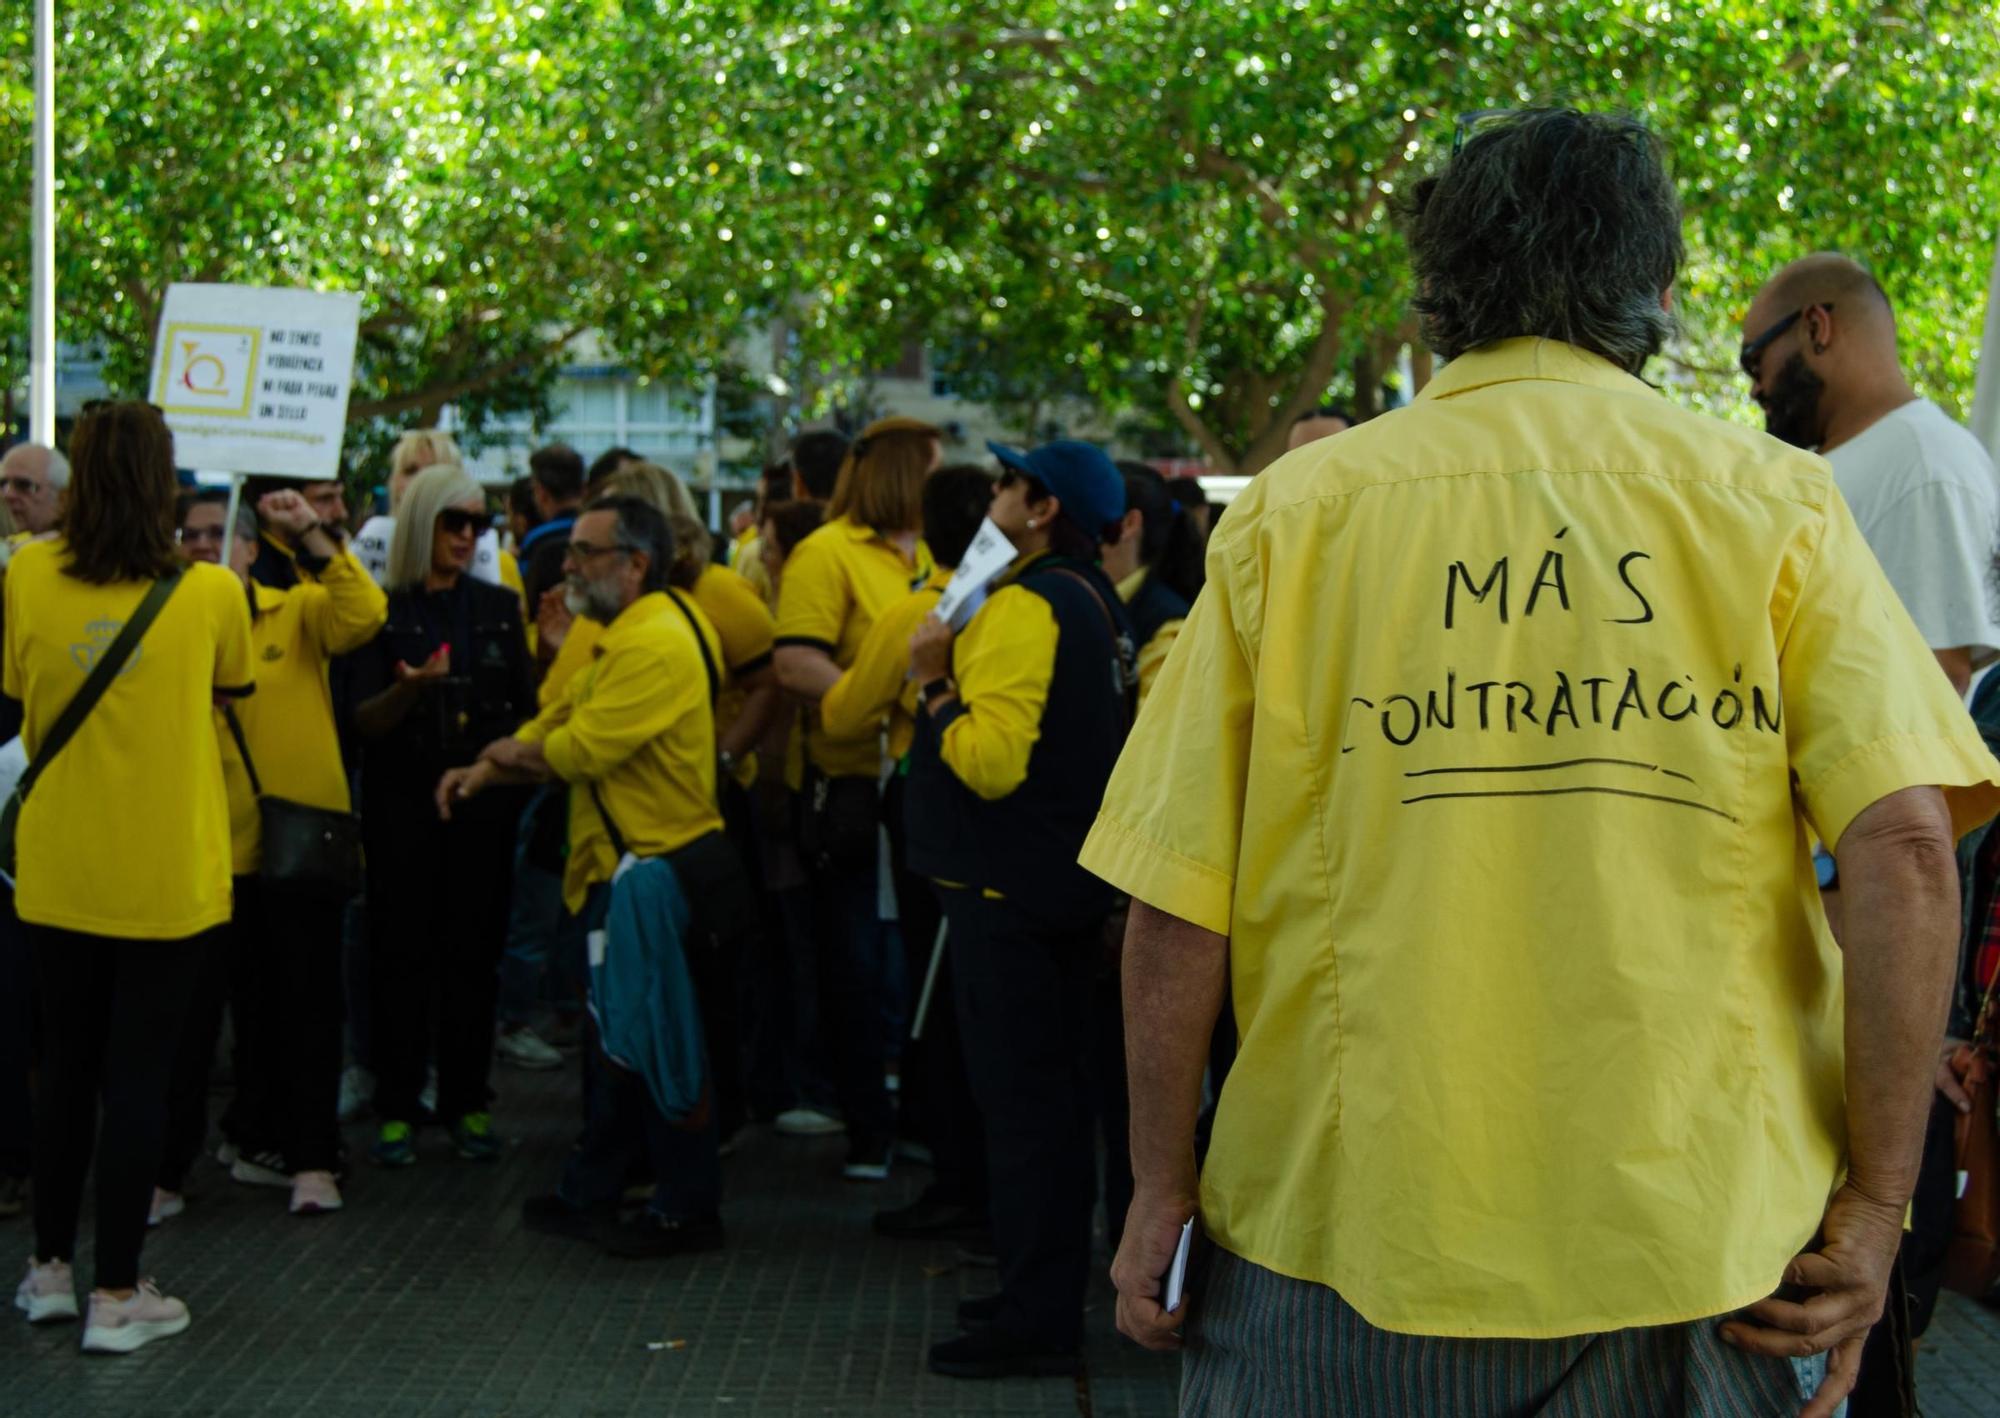 Movilización del personal de Correos en Málaga contra la "precariedad laboral"